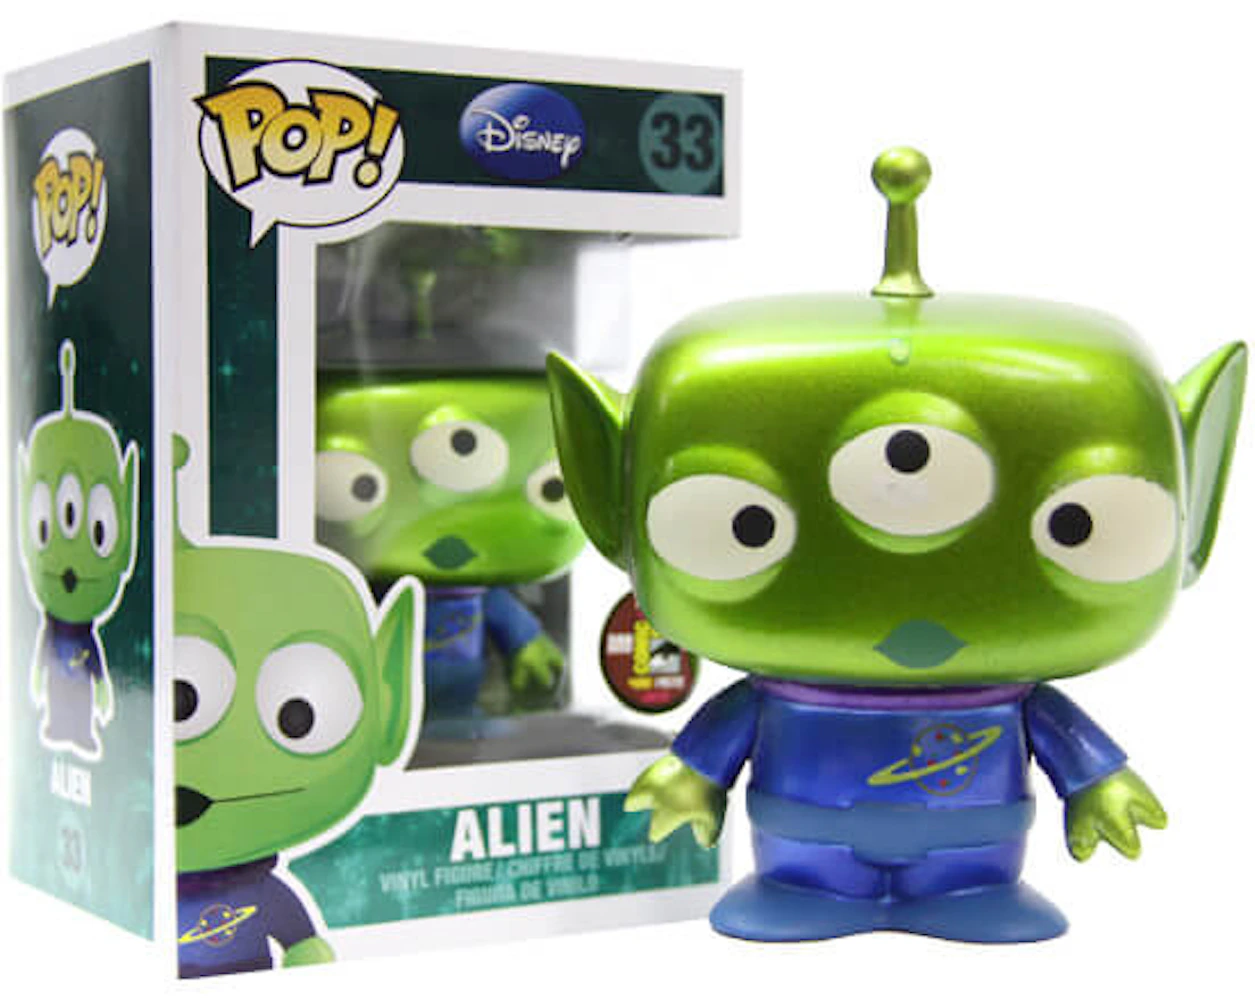 Funko Pop! Disney Toy Story Woody (Alien) 10 Inch Figure #756 - US